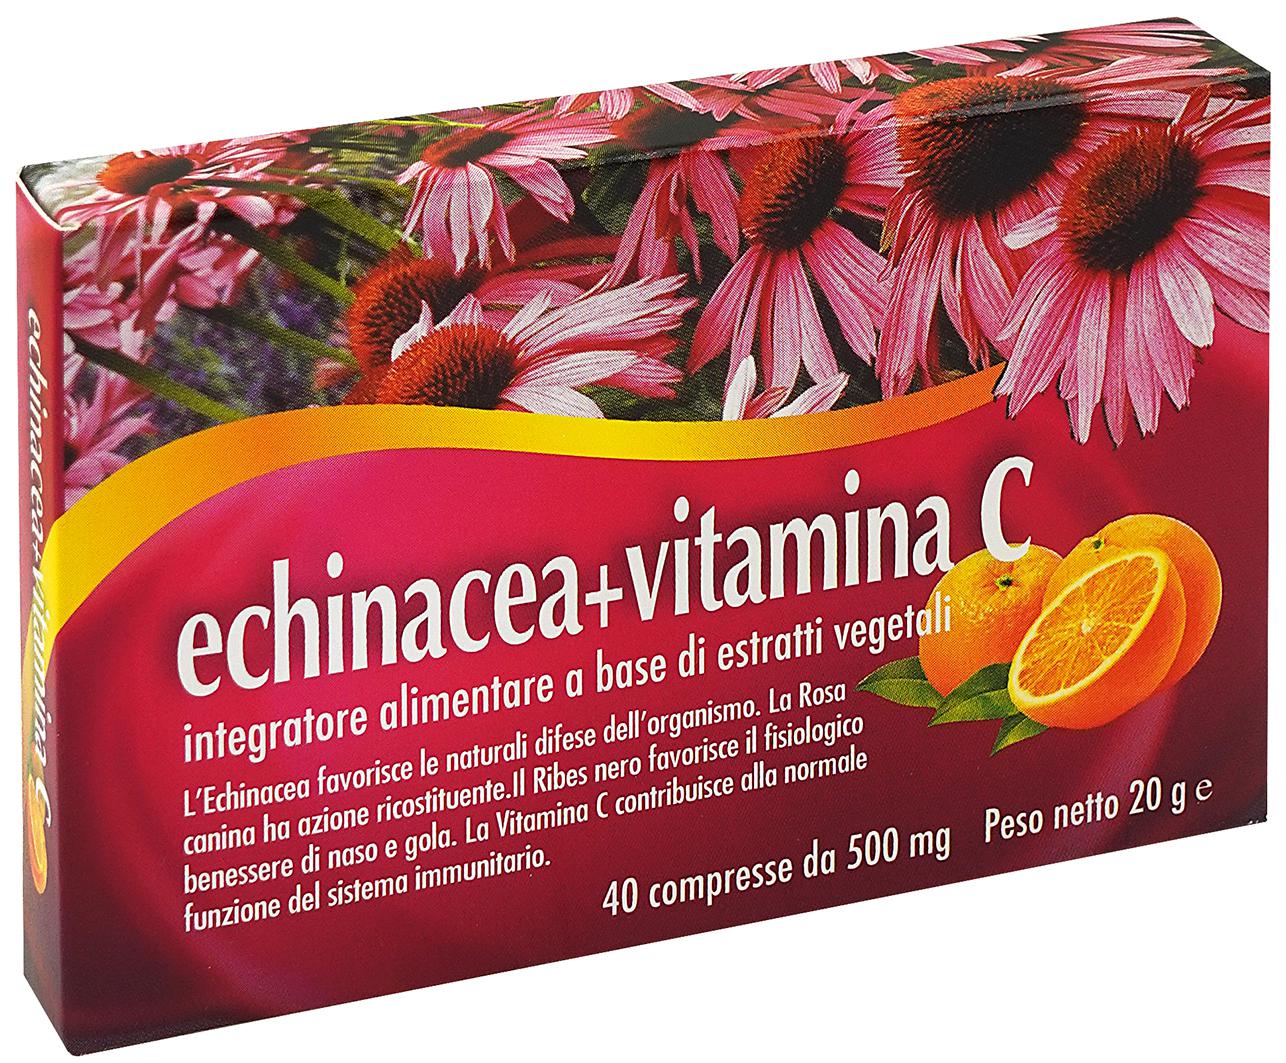 Echinacea + Vitamina C